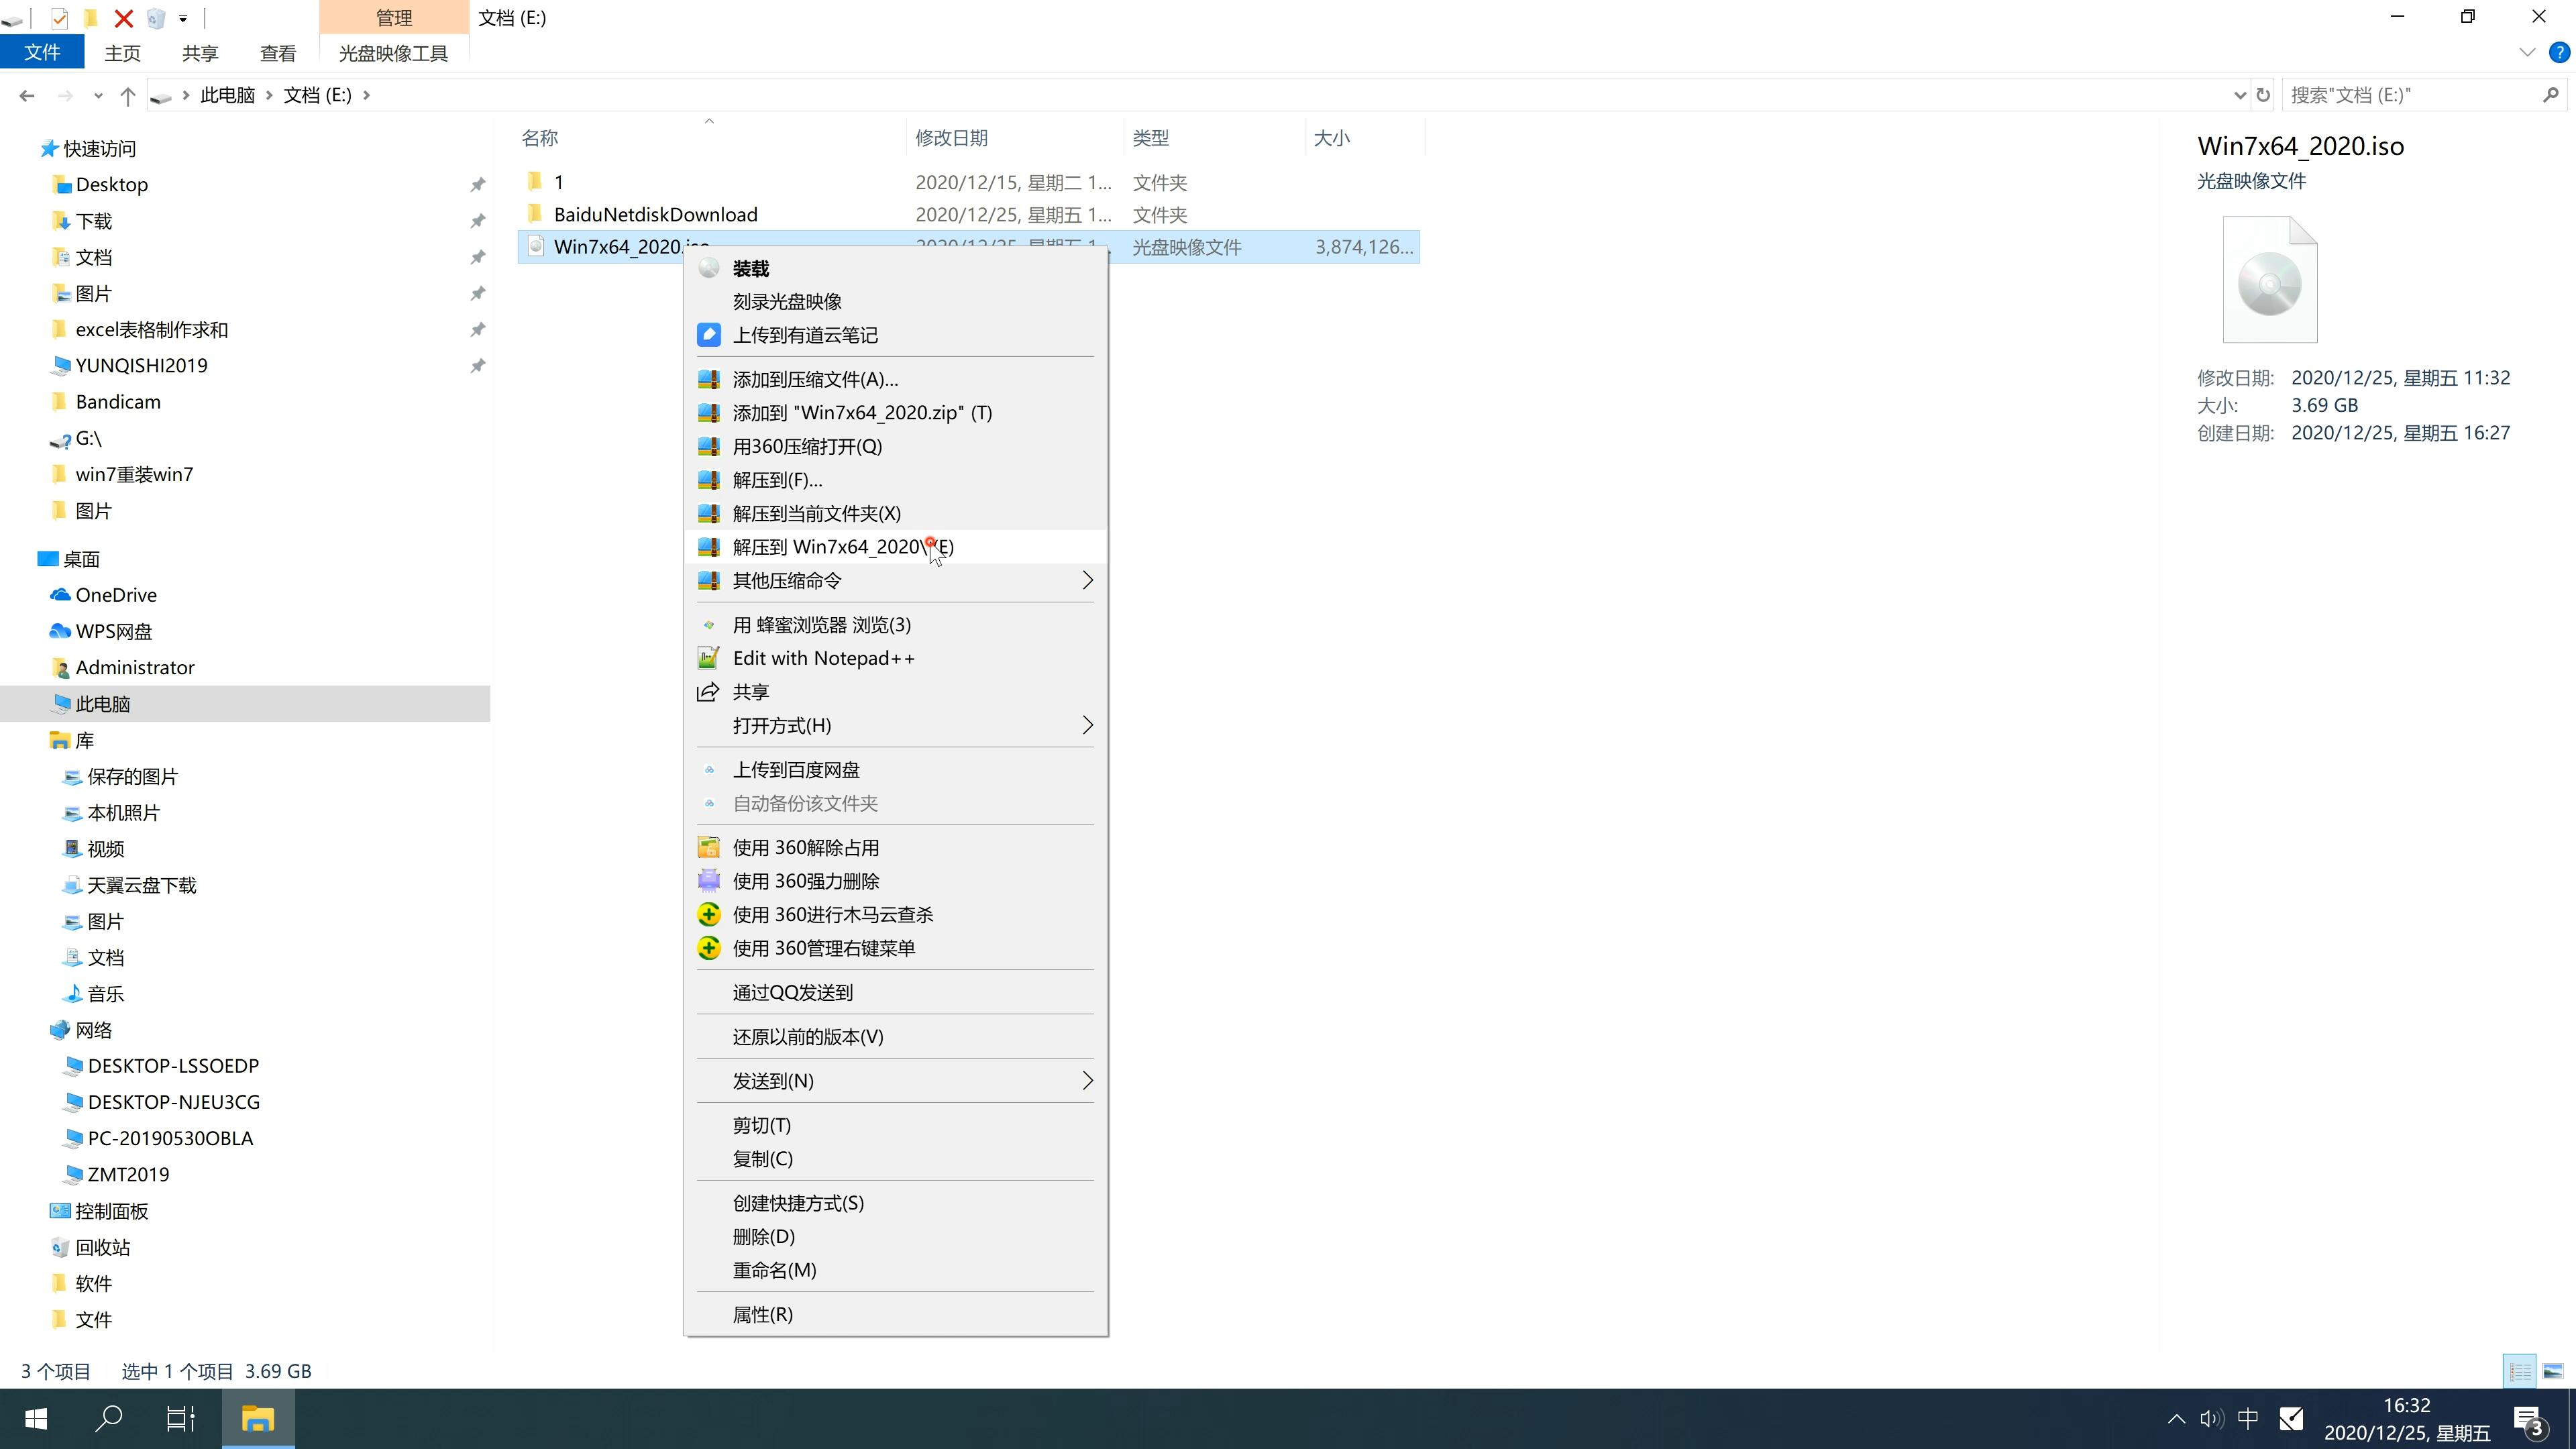 中关村系统 GHOST Window7 64 SP1 旗舰版 V2021.05(2)